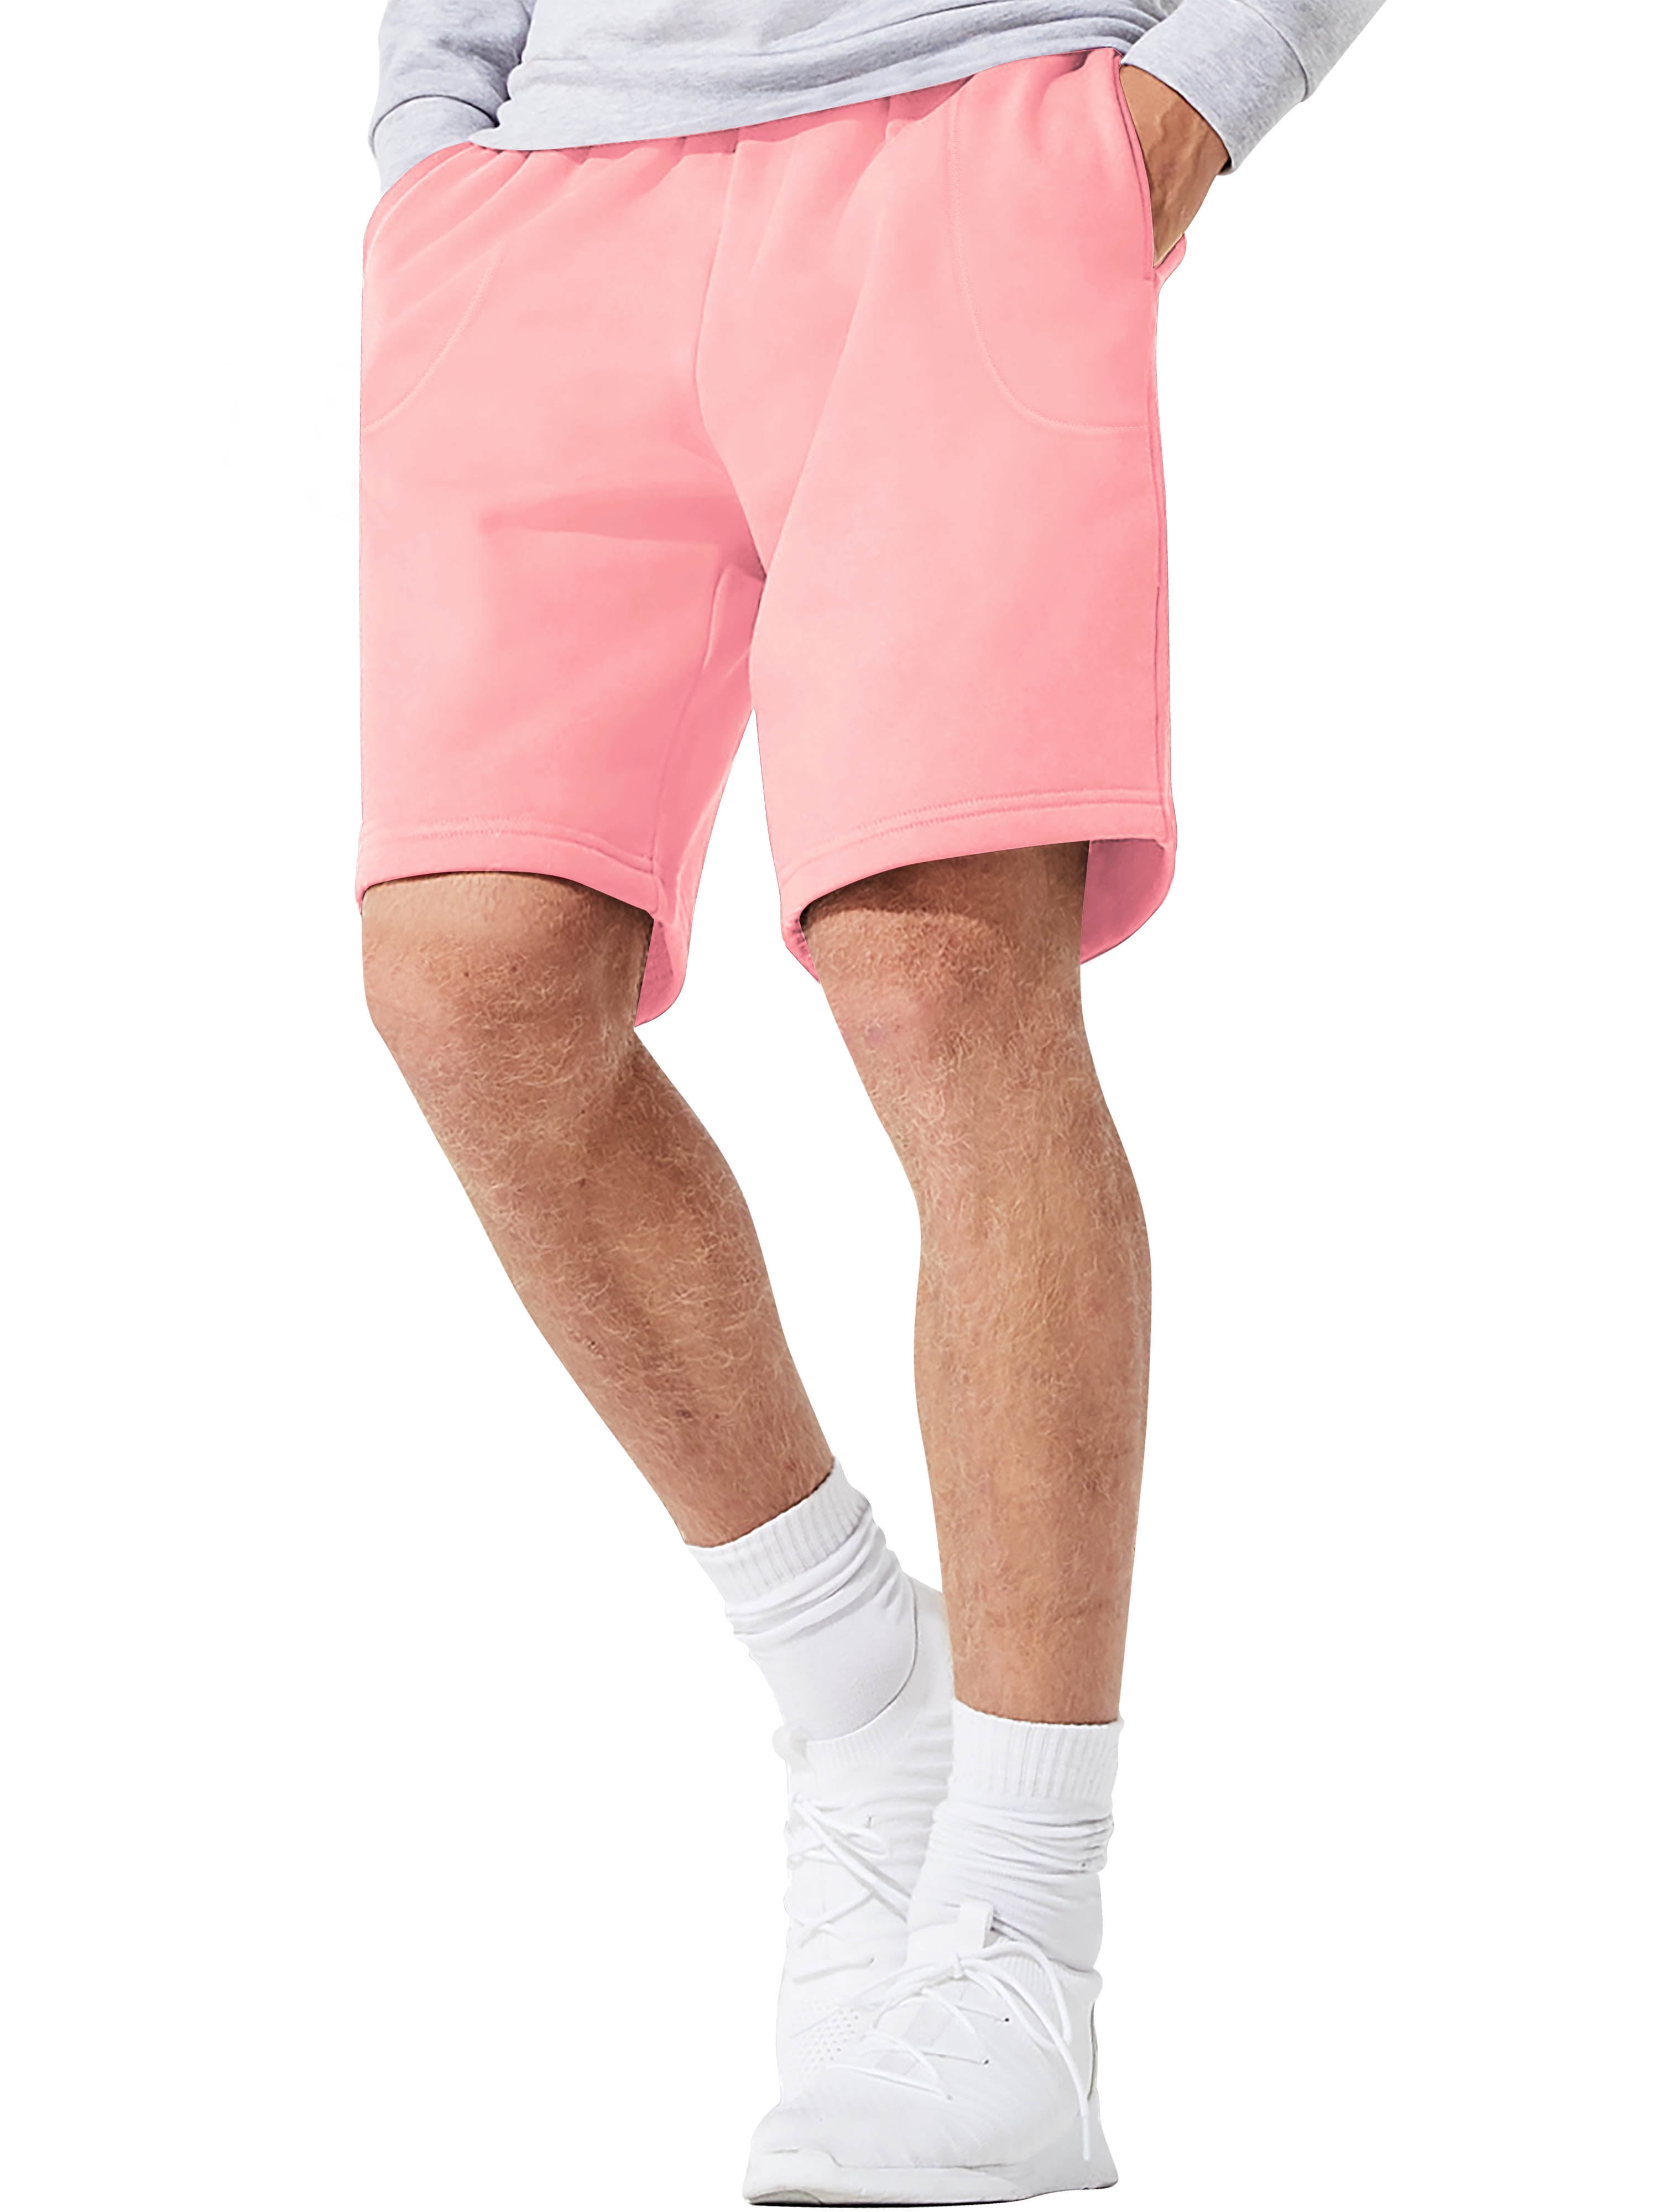 mens shorts pink